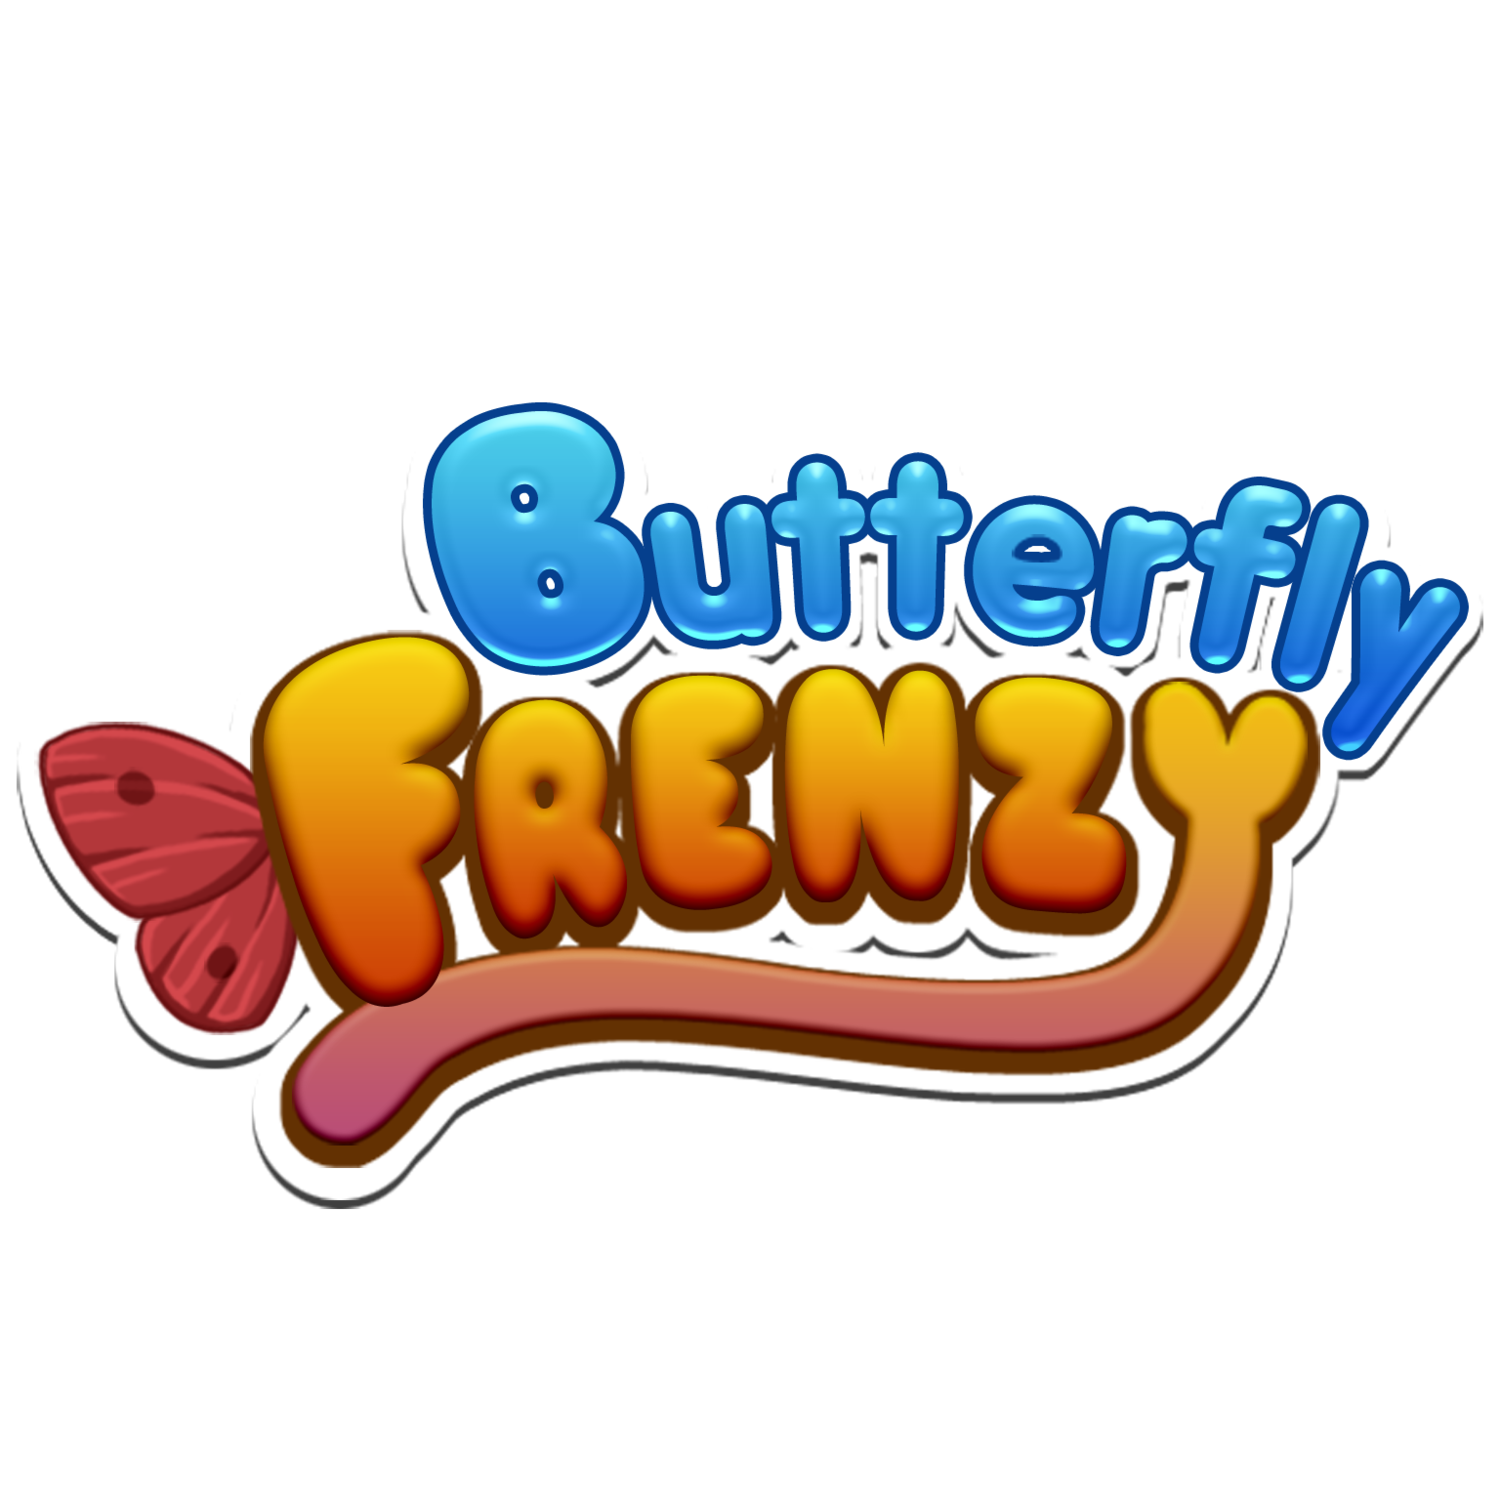 Butterfly Frenzy